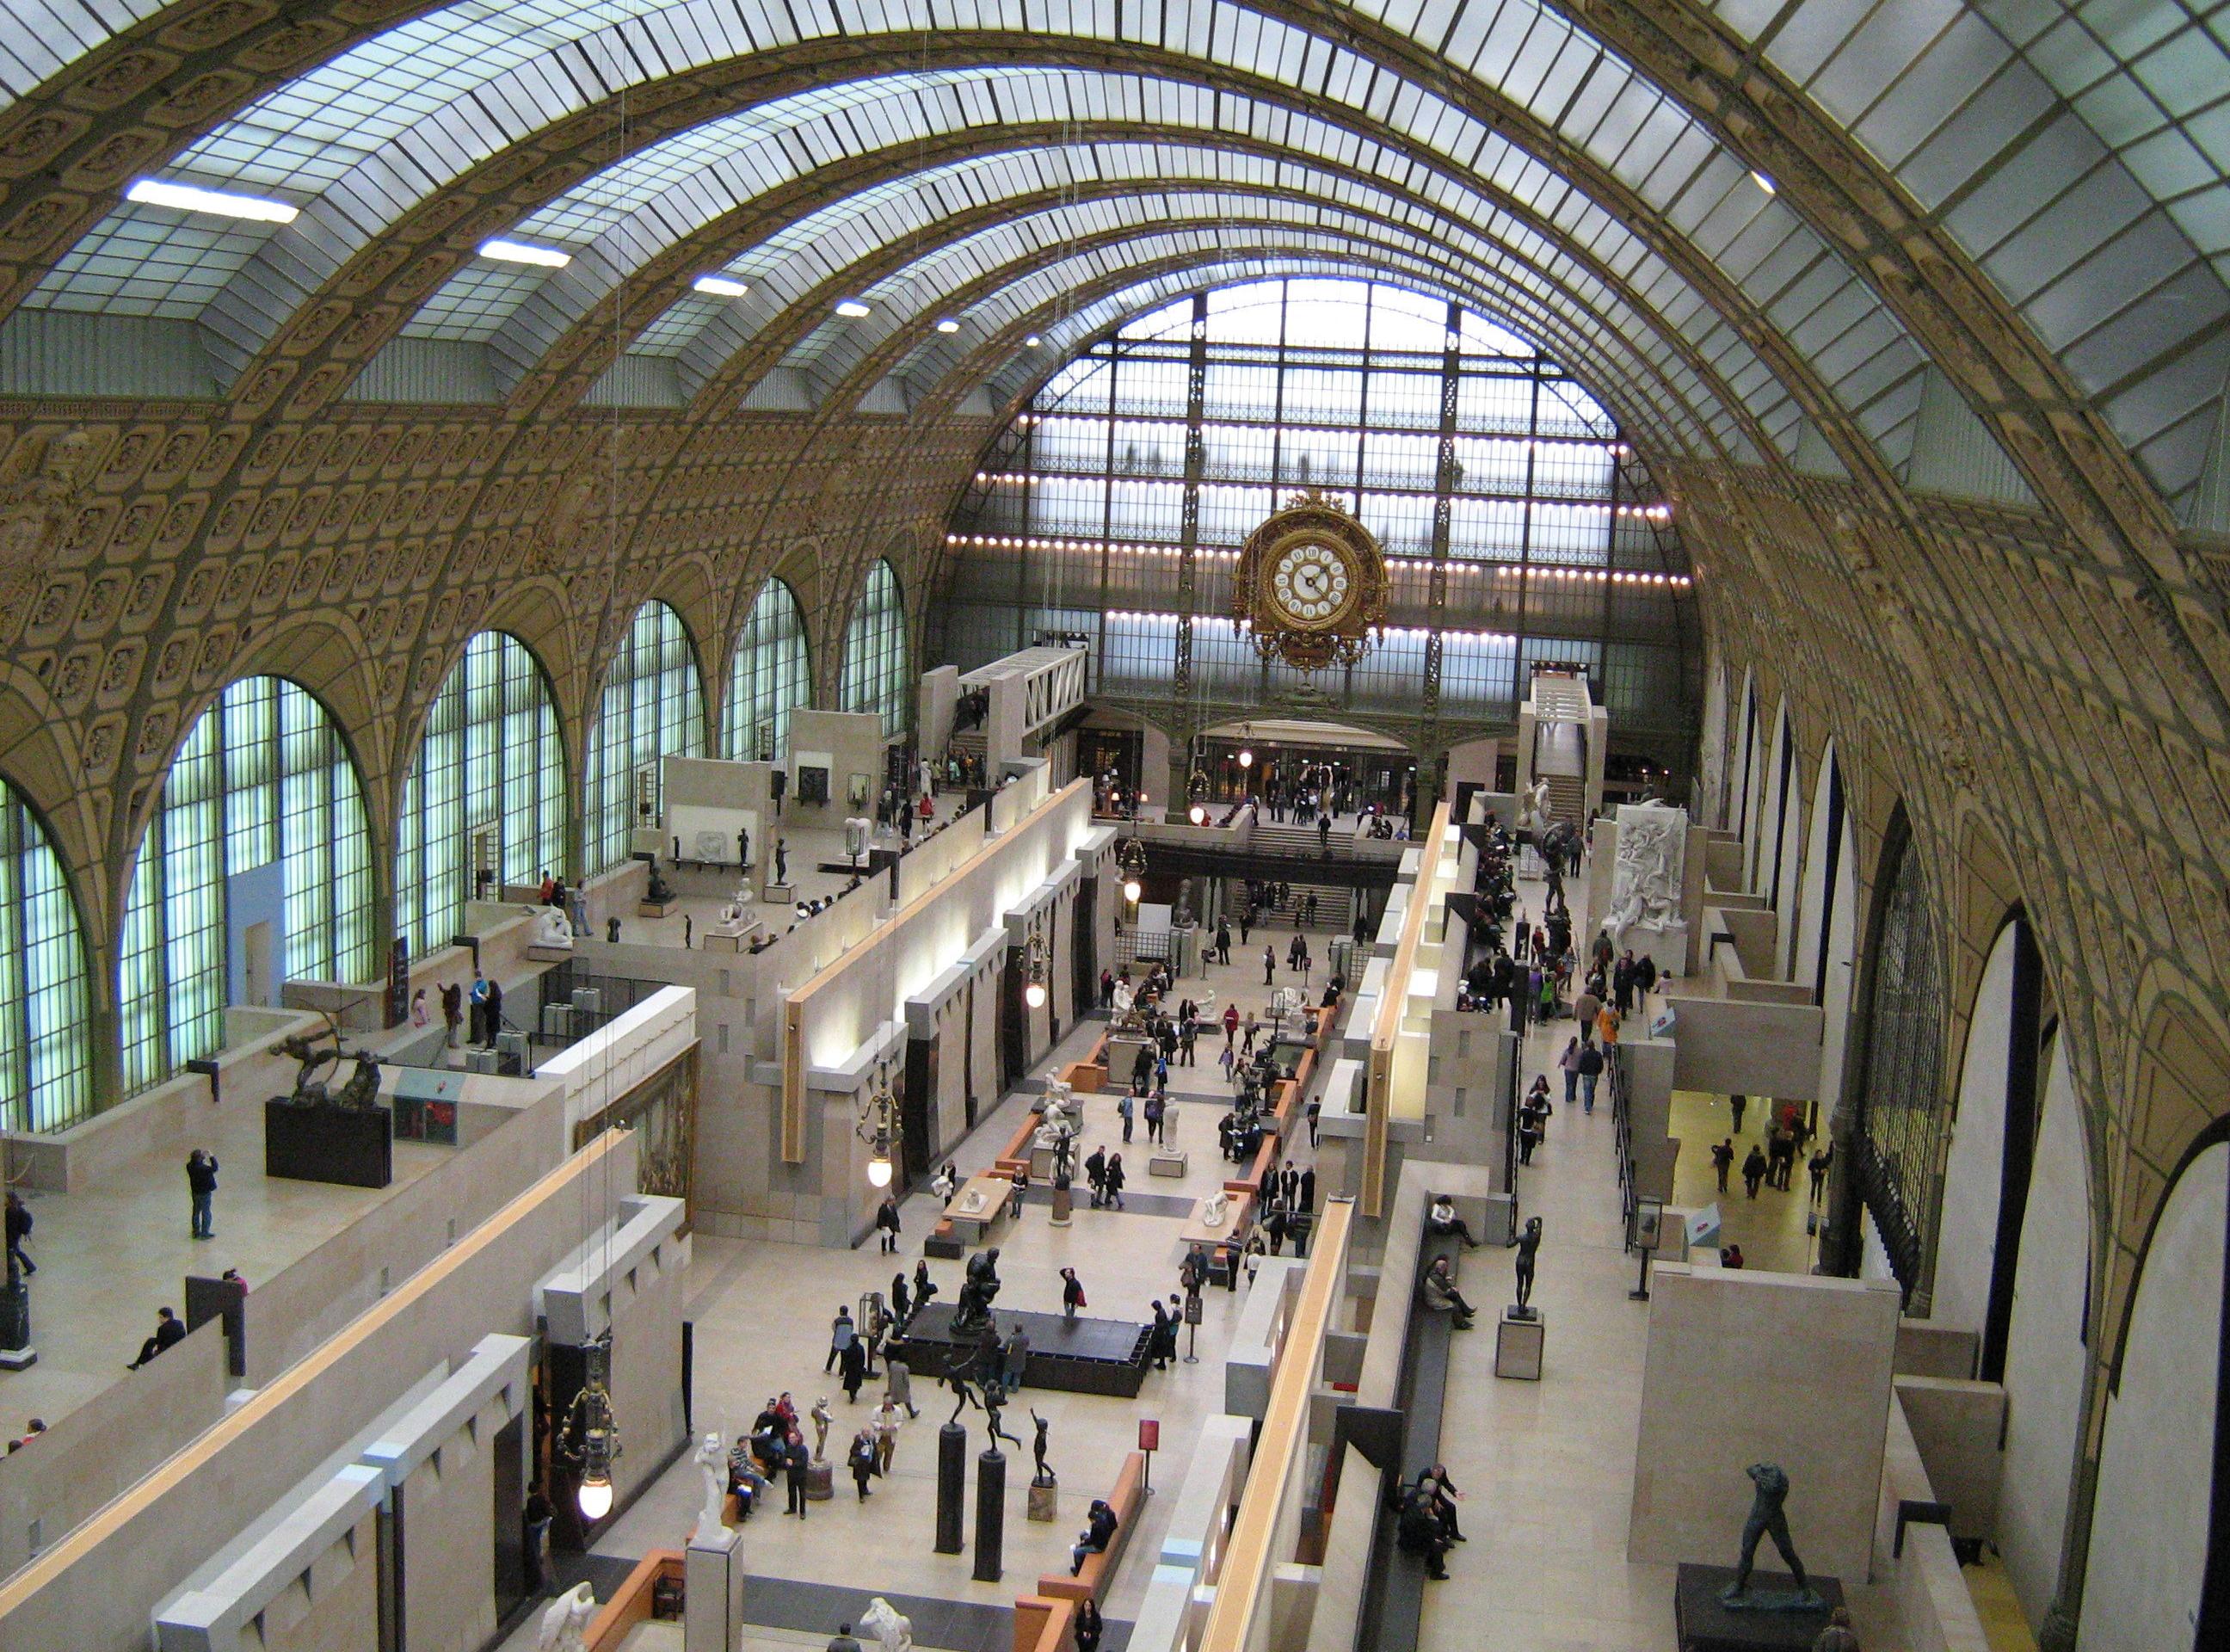 Offre combo : Billets coupe-file Musée d’Orsay & Musée de l’Orangerie à Paris